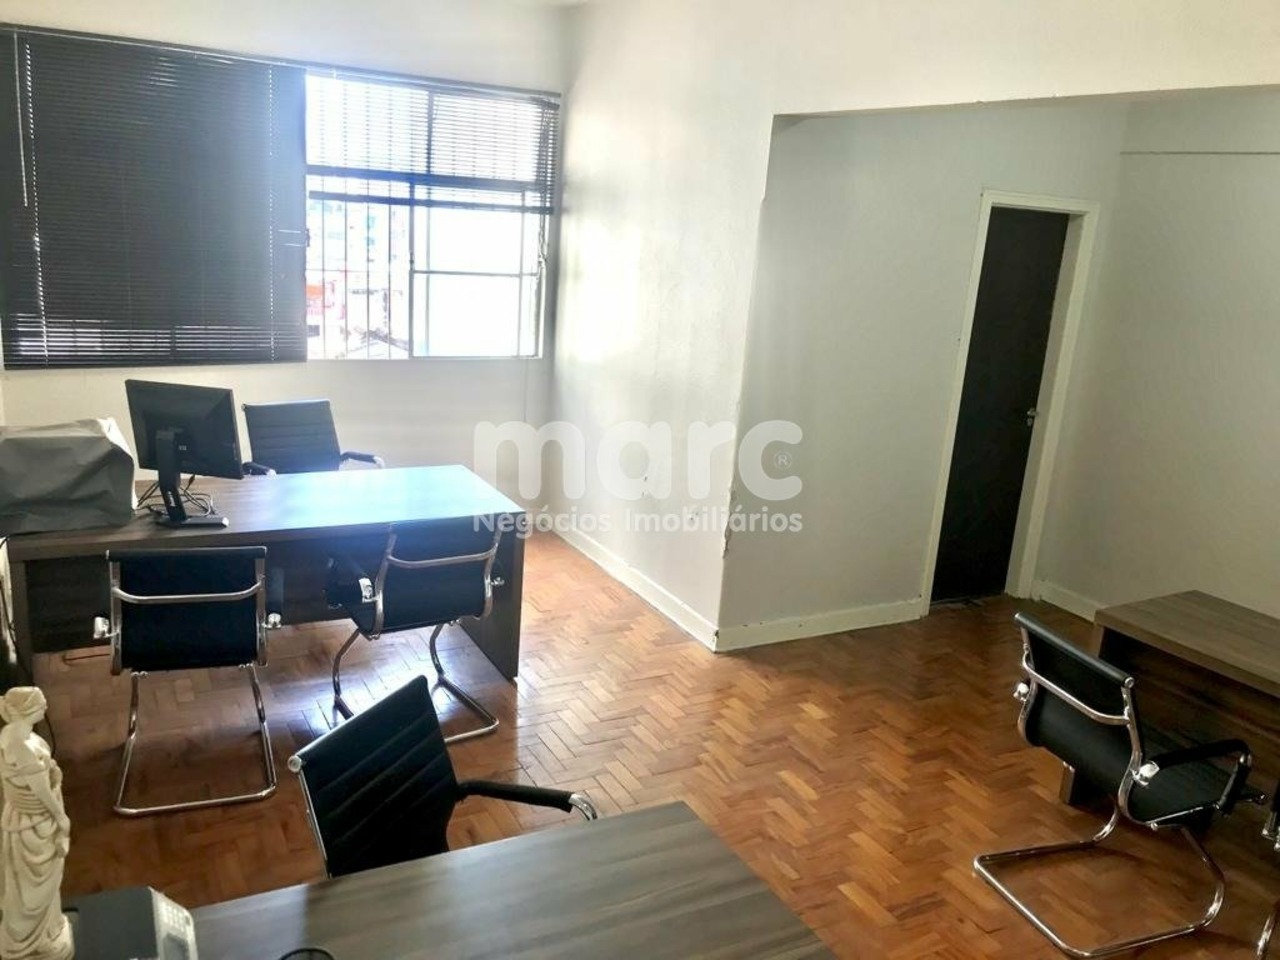 Comercial com 0 quartos para alugar, 0m² em Avenida São João, República, Sao Paulo, SP